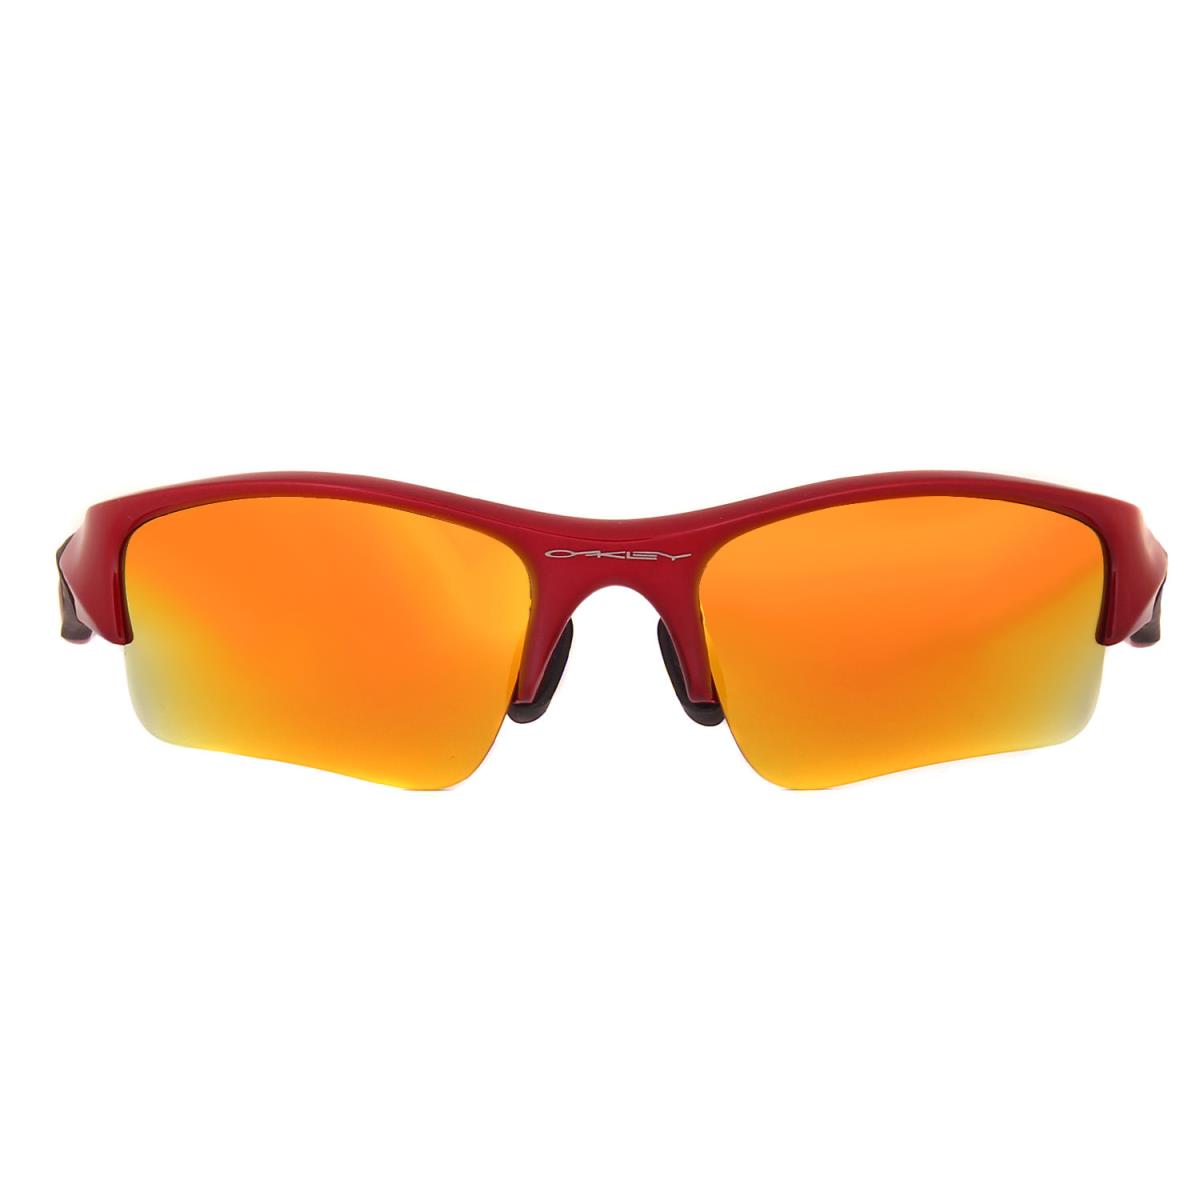 激安の Oakley オークリー サングラス 偏光レンズ スポーツサングラス Flak 眼鏡 レッドフレーム ゴールドミラーレンズ メンズ 中古 美品 K2849 楽天市場 Www Riznica Net